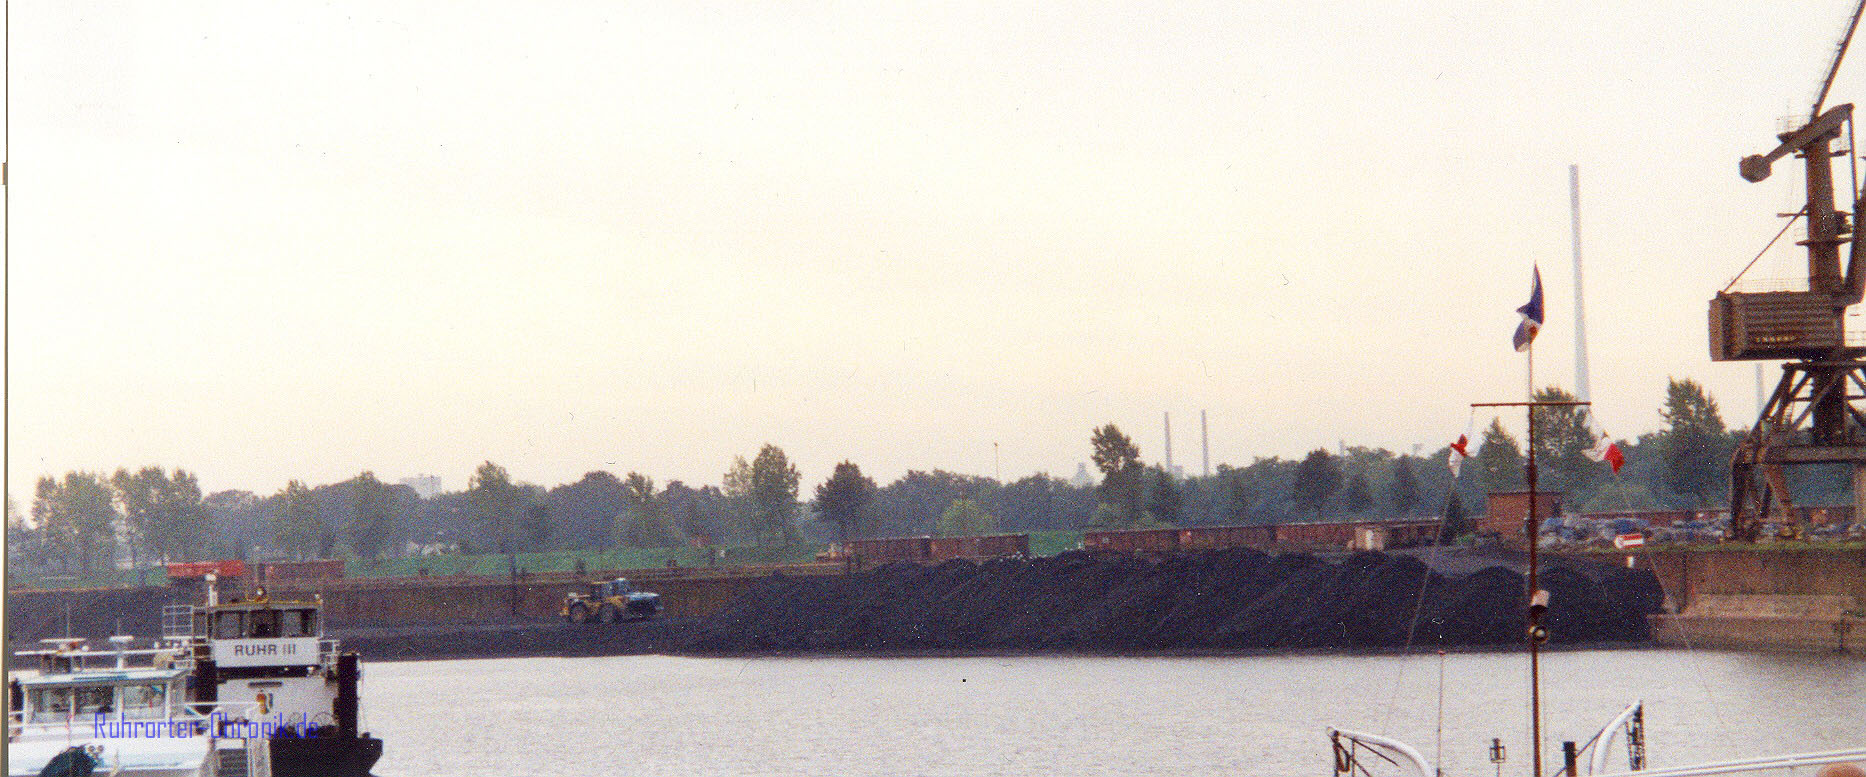 Kaiserhafen : Zeitraum: 1991-2005